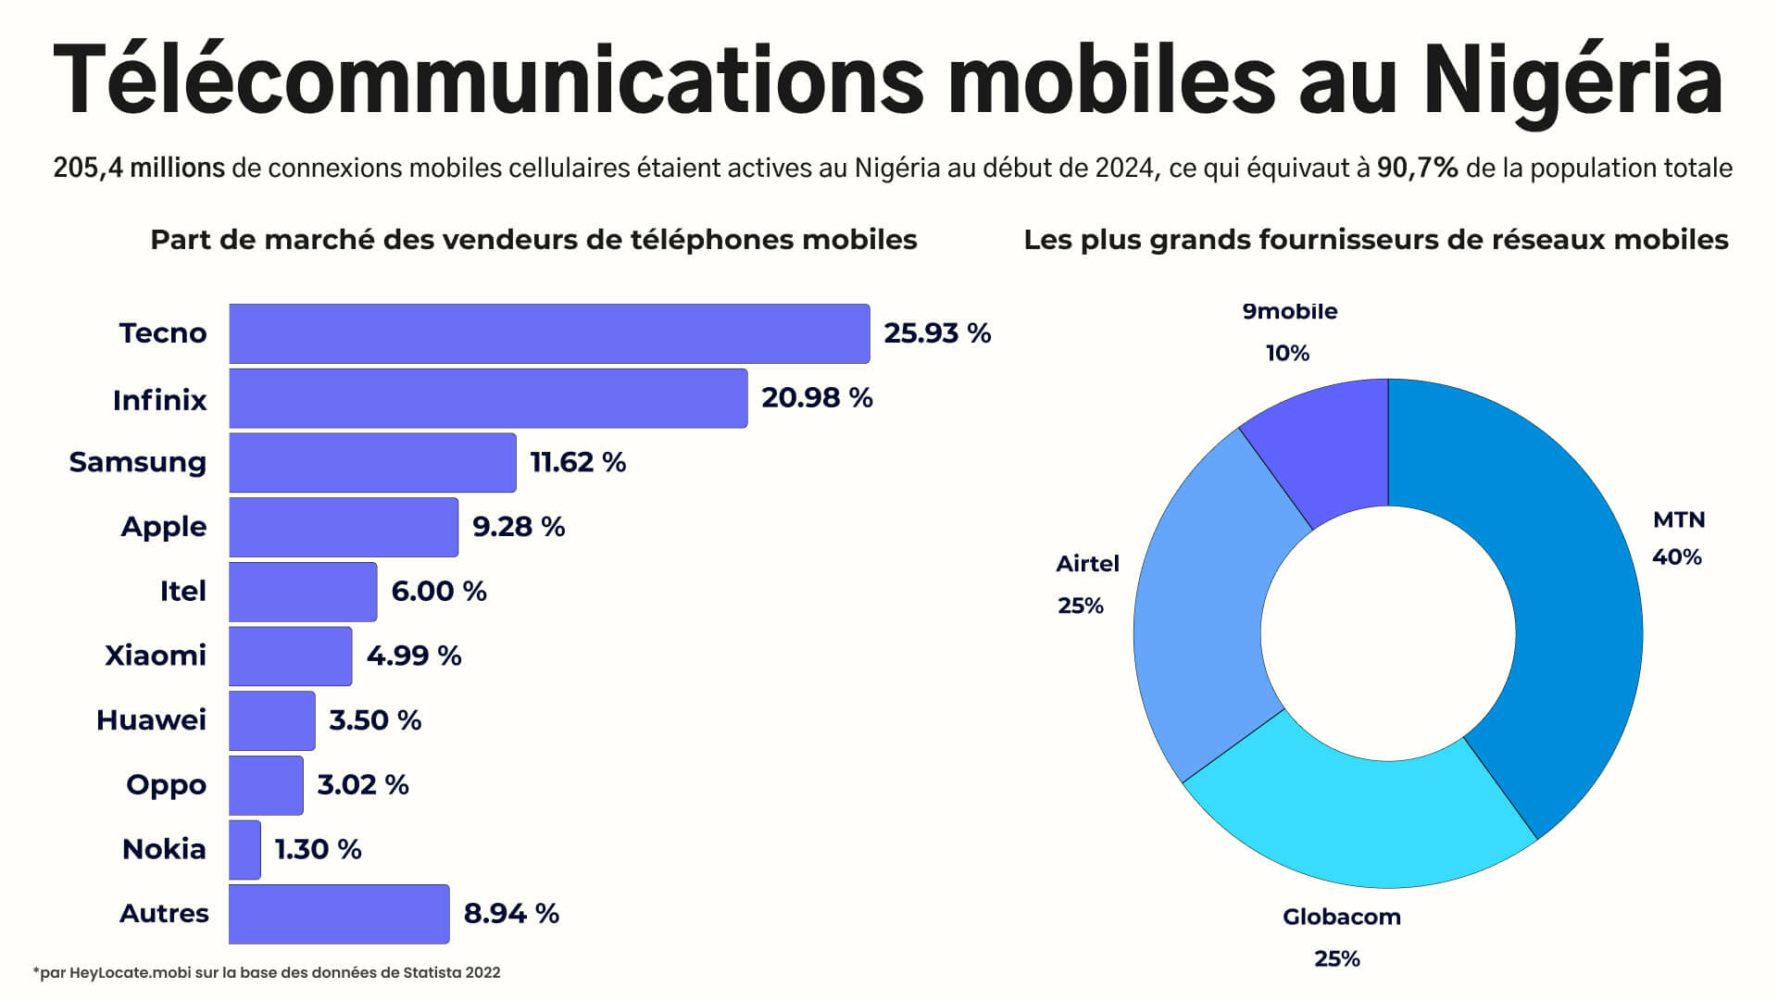 Infographie HeyLocate sur les télécommunications mobiles au Nigeria. Les diagrammes montrent les parts de marché des vendeurs de téléphones portables, avec Tecno et Infinix en tête, et les principaux fournisseurs de réseaux mobiles, avec MTN, Globacom et Airtel.